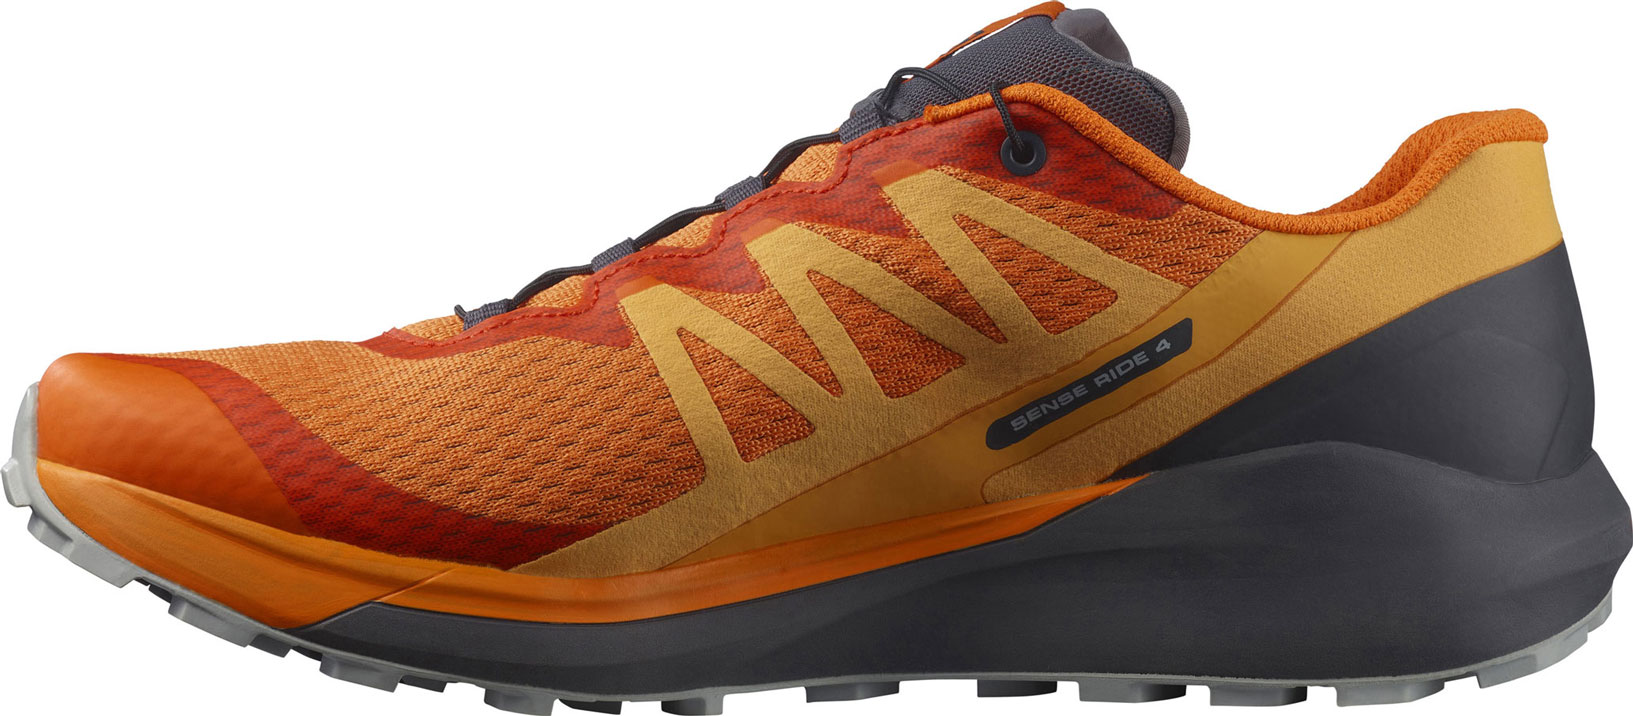 Men’s trail shoes